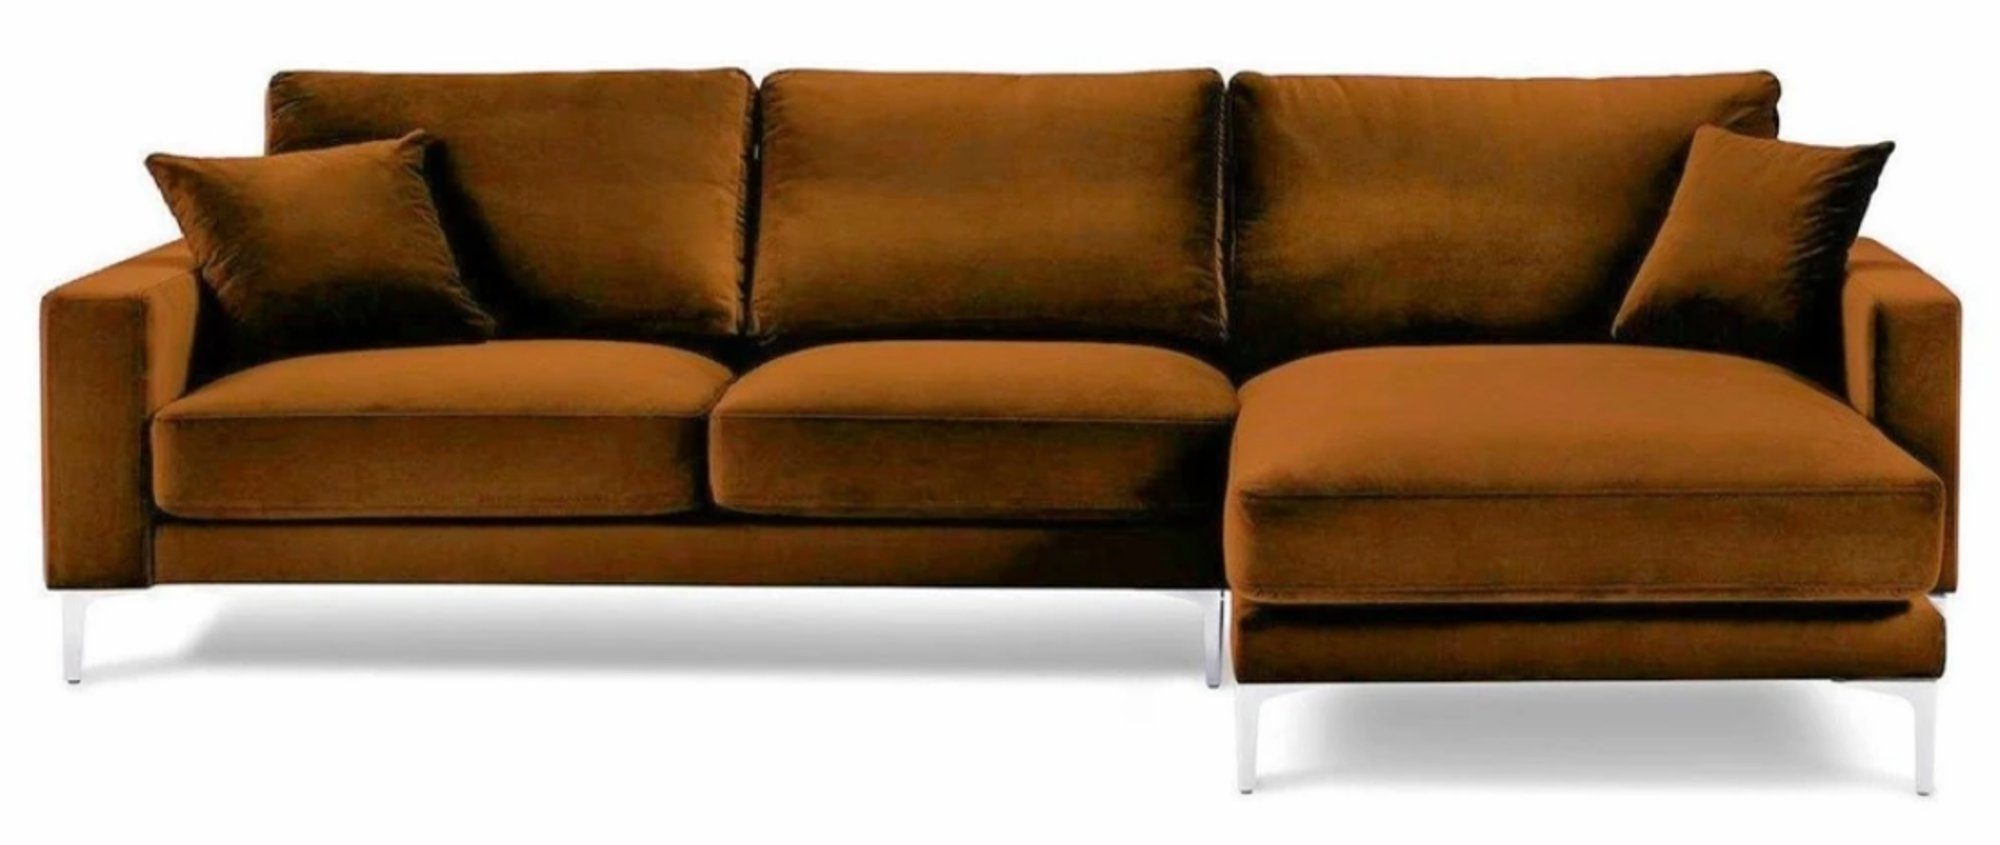 JVmoebel Ecksofa, Stoff Wohnzimmer Orange Polster Ecksofa Design Couchen Sofa